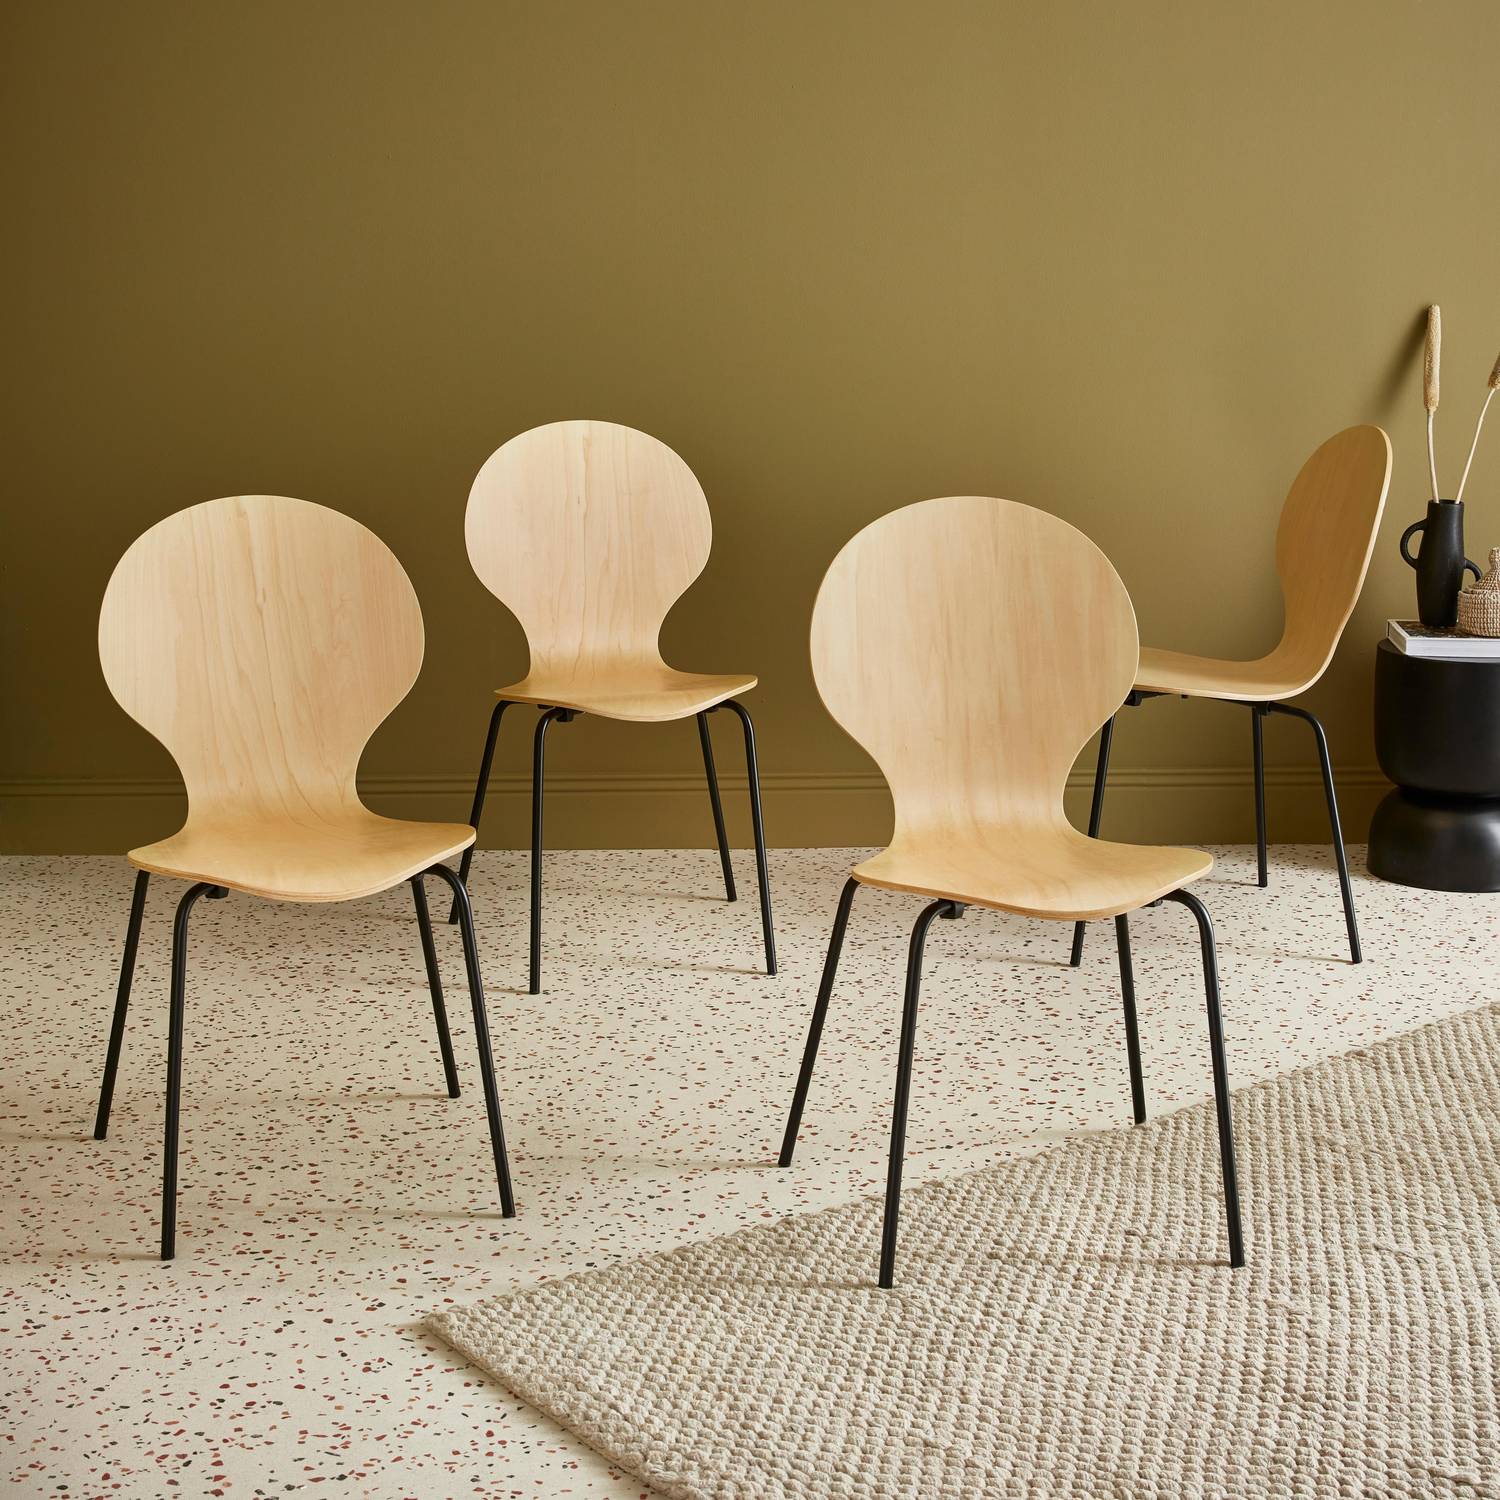 Conjunto de 4 cadeiras empilháveis retro naturais, madeira de hevea e contraplacado, pernas de aço, Naomi, L 43 x P 48 x A 87cm Photo1